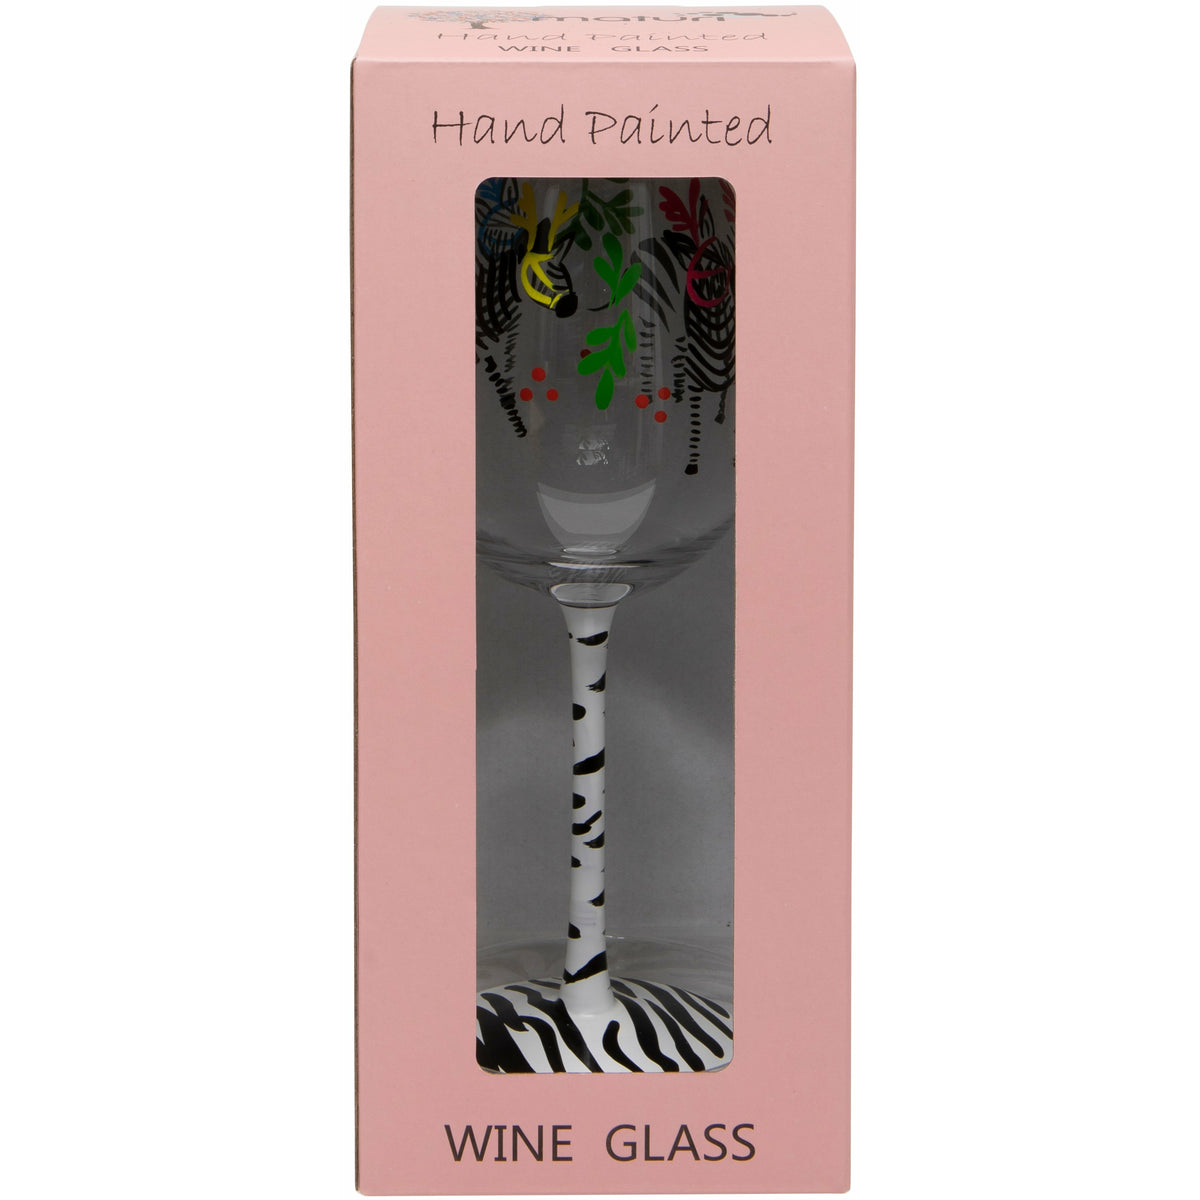 Hand Painted Zebra Wine Glass in Box